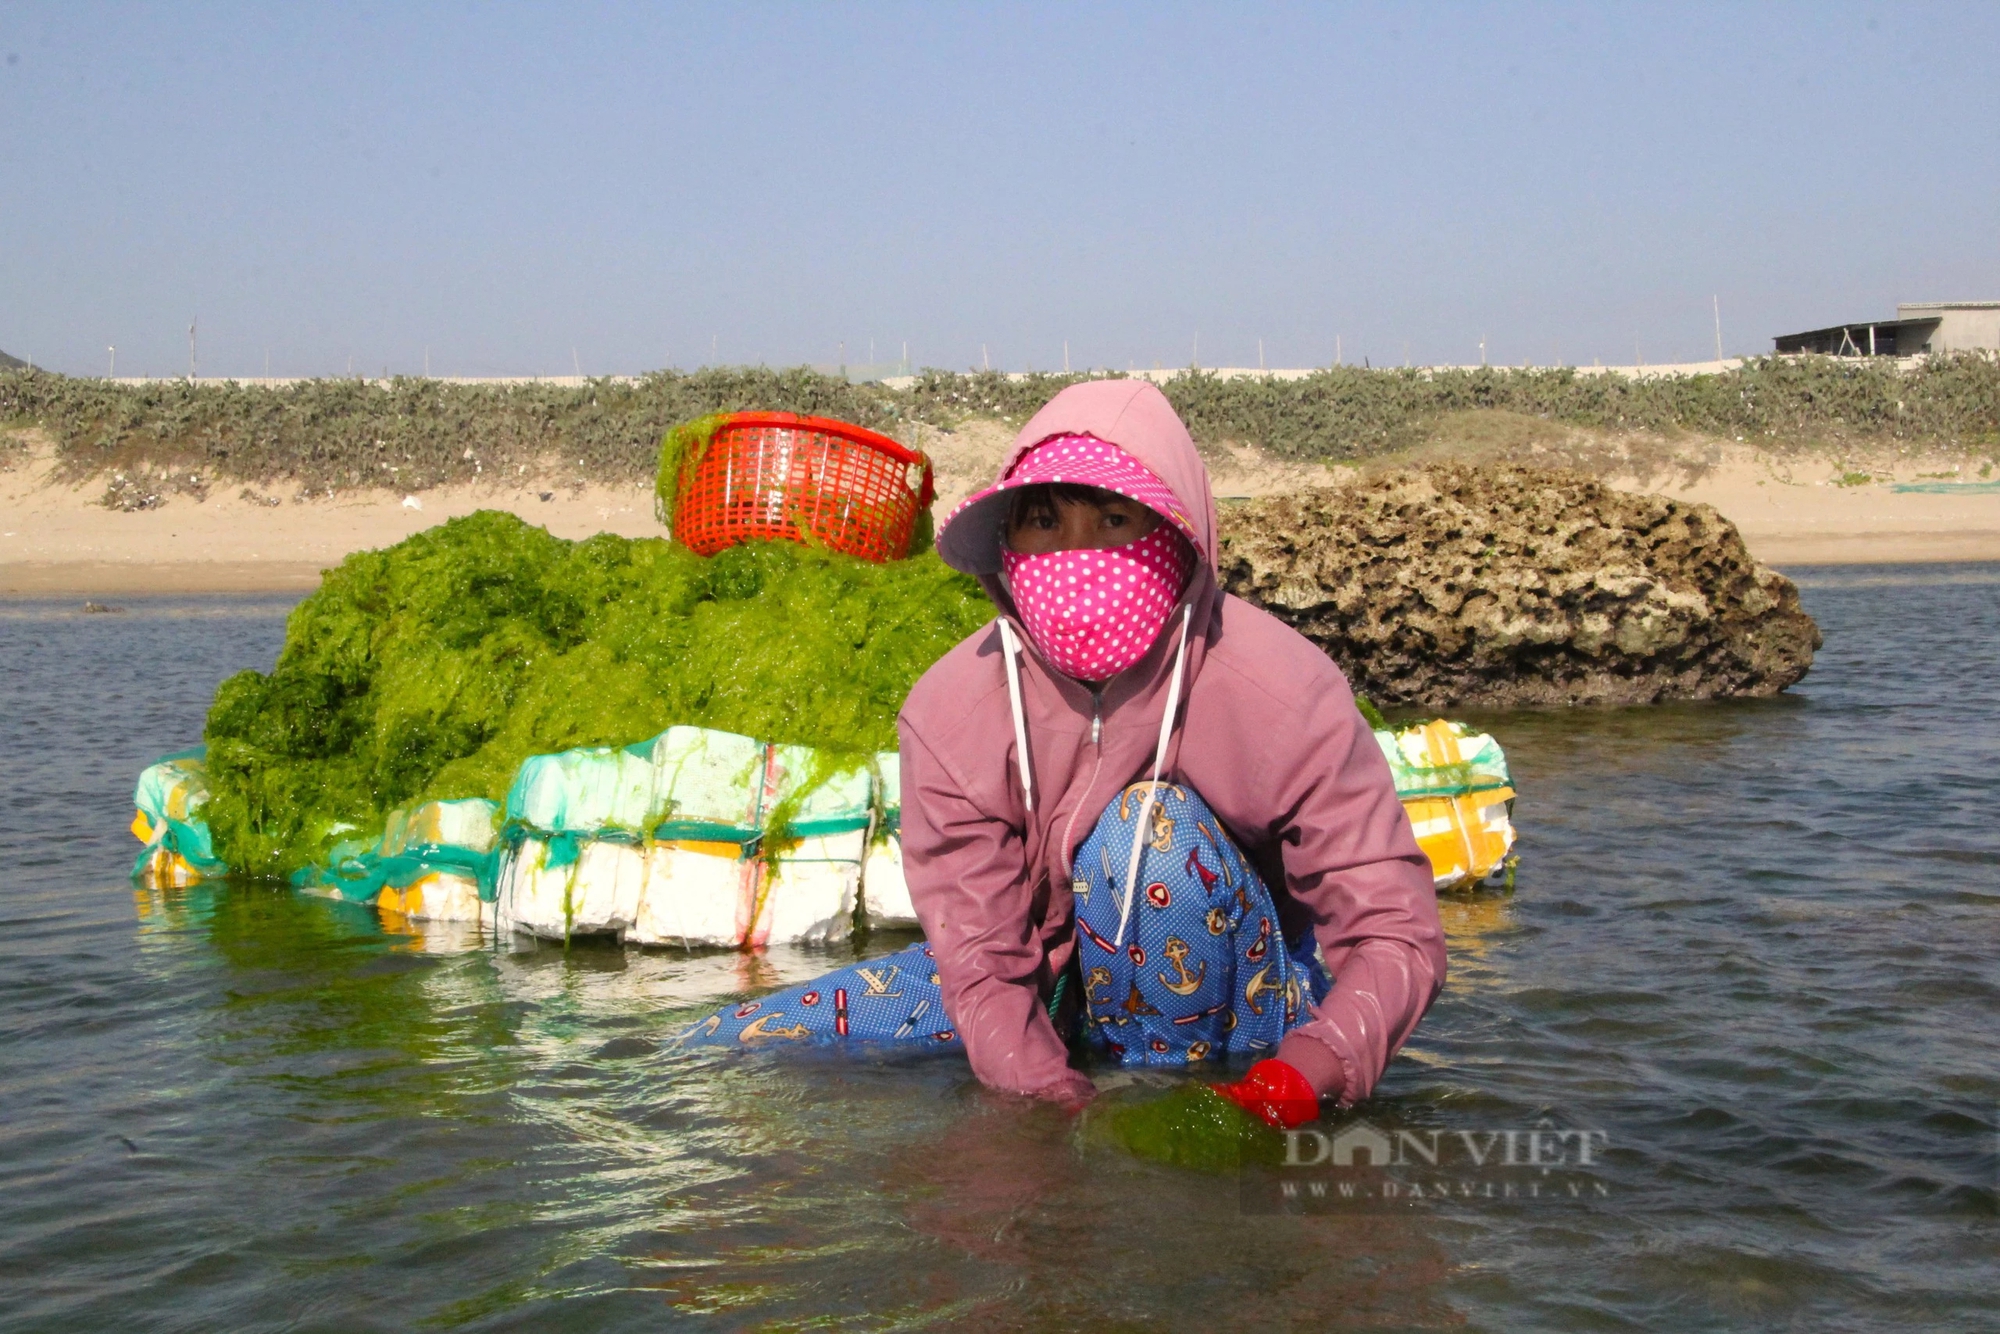 Ra biển vớt thứ rong xanh mướt, dân làng chài ở Ninh Thuận kiếm tiền triệu mỗi ngày - Ảnh 4.